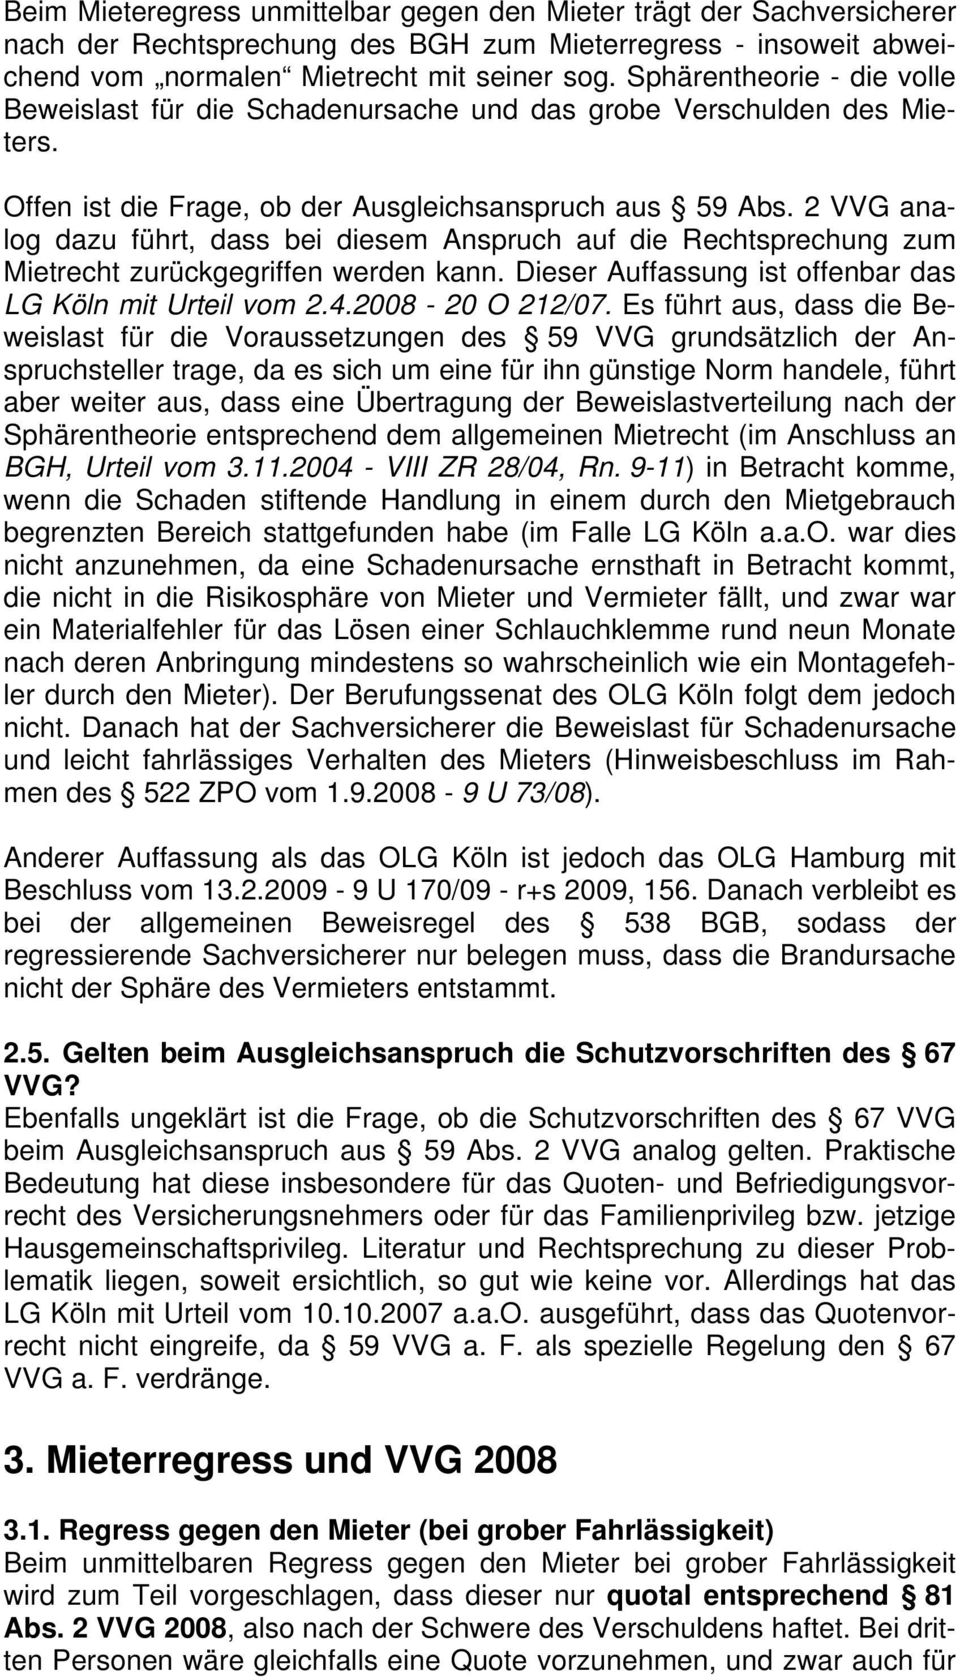 2 VVG analog dazu führt, dass bei diesem Anspruch auf die Rechtsprechung zum Mietrecht zurückgegriffen werden kann. Dieser Auffassung ist offenbar das LG Köln mit Urteil vom 2.4.2008-20 O 212/07.